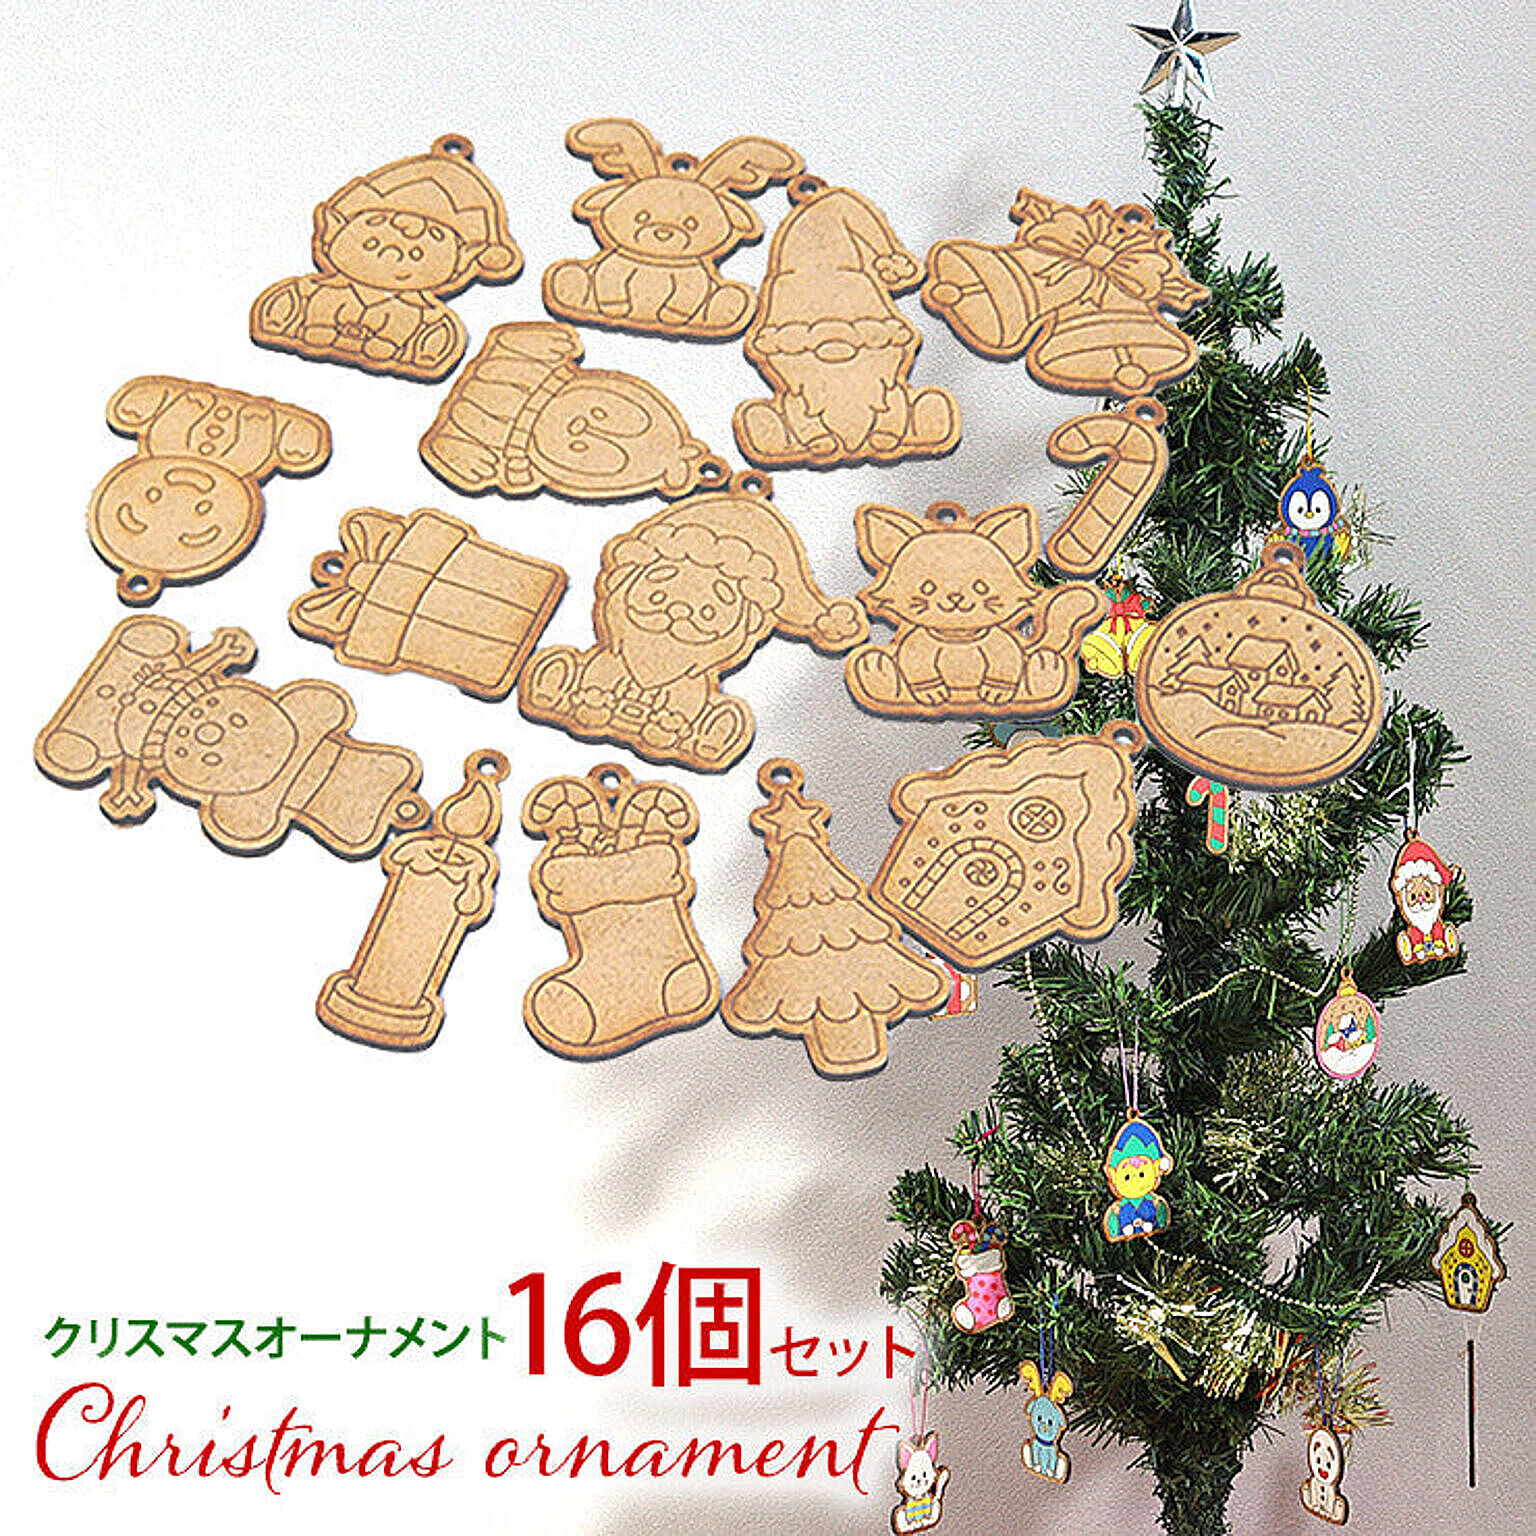 16個セット クリスマスオーナメント S001 サンタクロース トナカイ ツリー飾り 木製 日本製